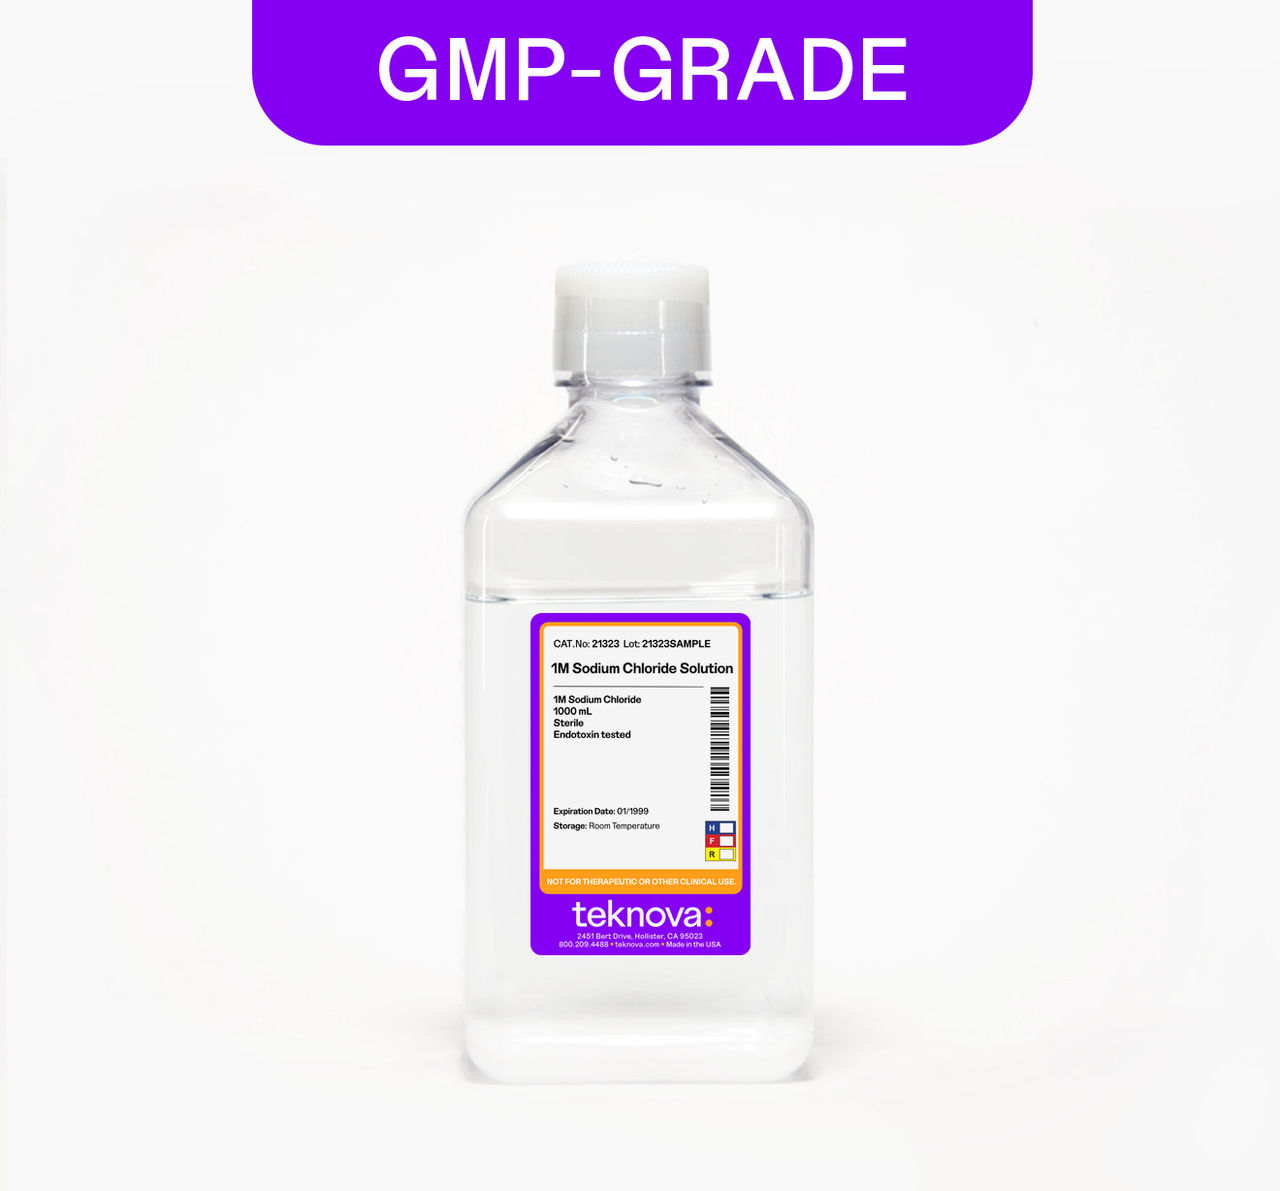 1M Sodium Chloride Solution, 1000mL, GMP-grade